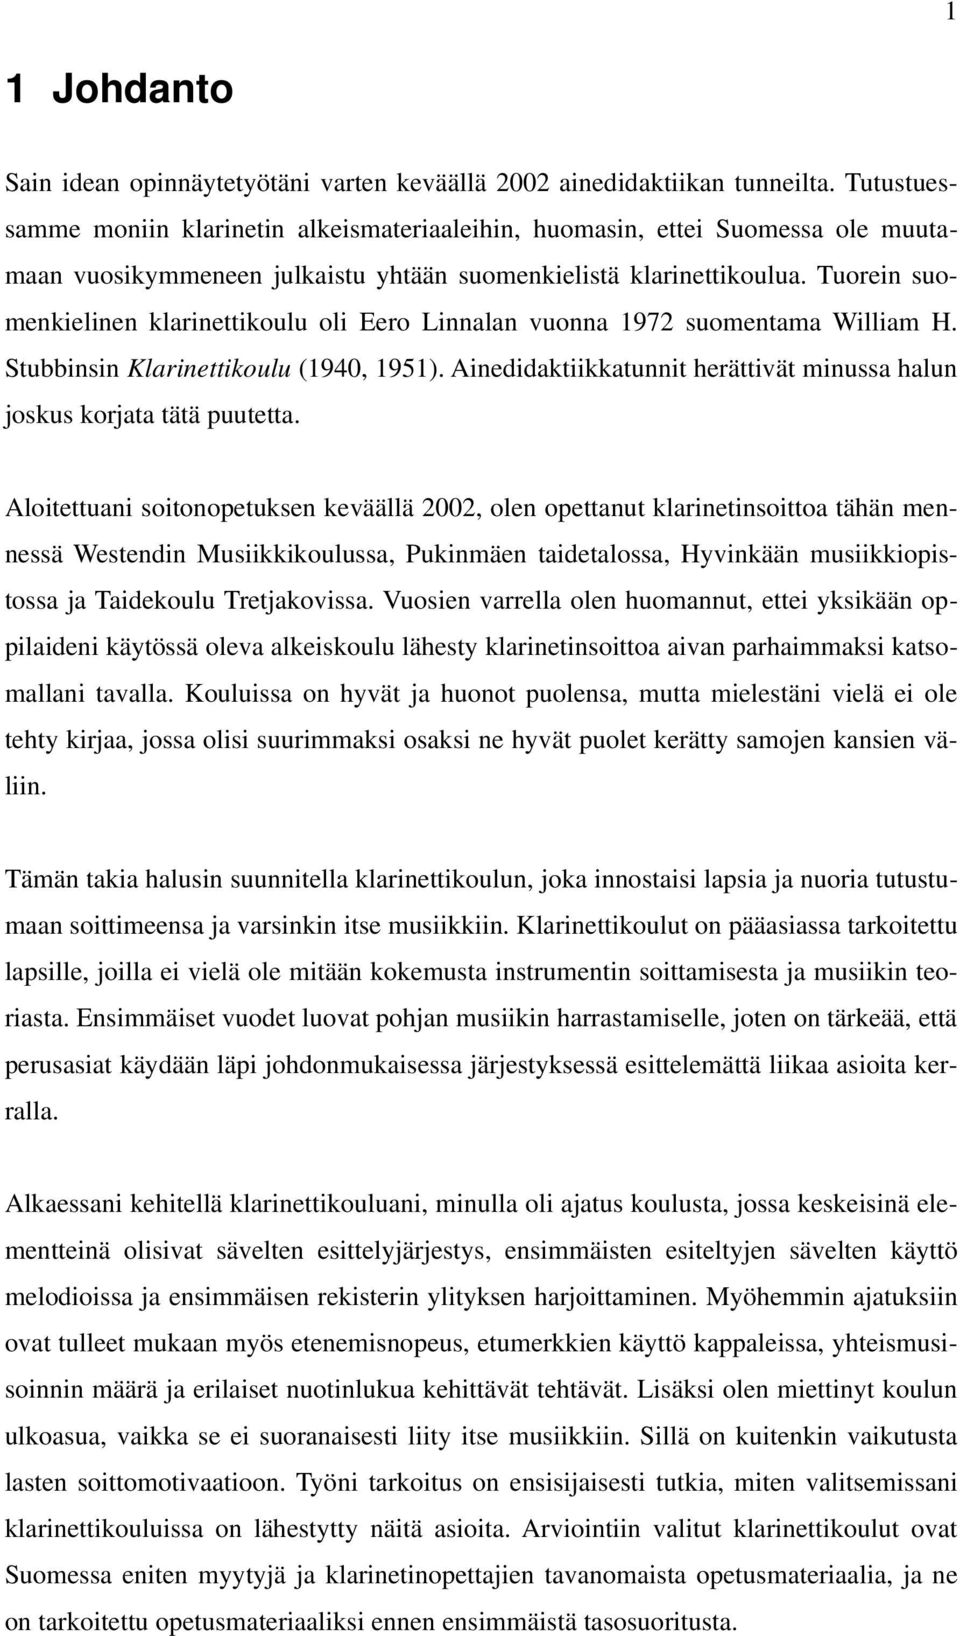 Tuorein suomenkielinen klarinettikoulu oli Eero Linnalan vuonna 1972 suomentama William H. Stubbinsin Klarinettikoulu (1940, 1951).